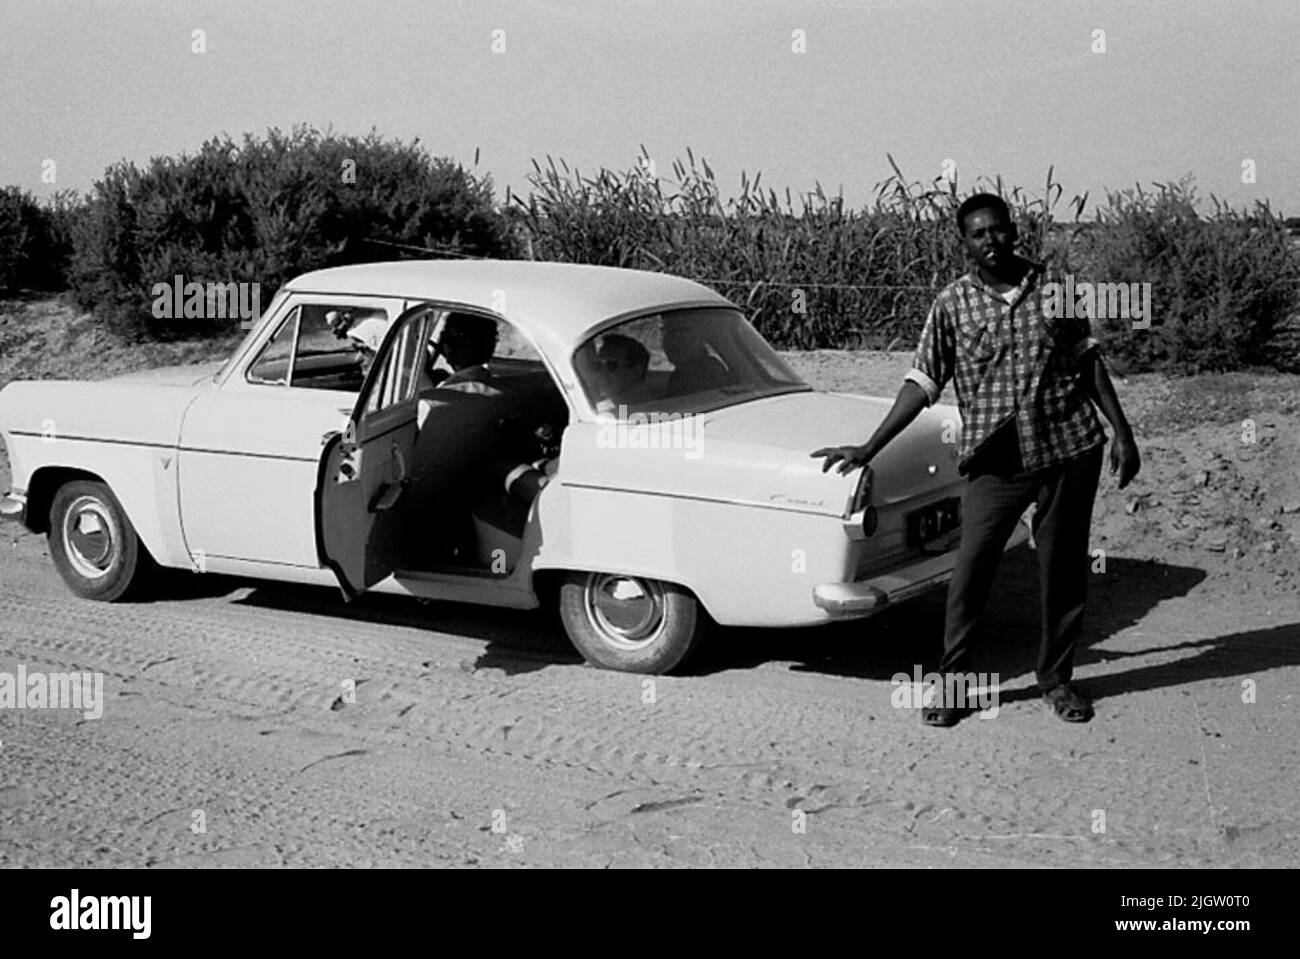 Das Foto wurde ungefähr 1961-08-22 aufgenommen. Ein Auto wird auf einer Straße geparkt. Rechts vom Auto steht ein Mann und lehnt sich zur Heckklappe. African travel35 Bilder in Serie. Stockfoto